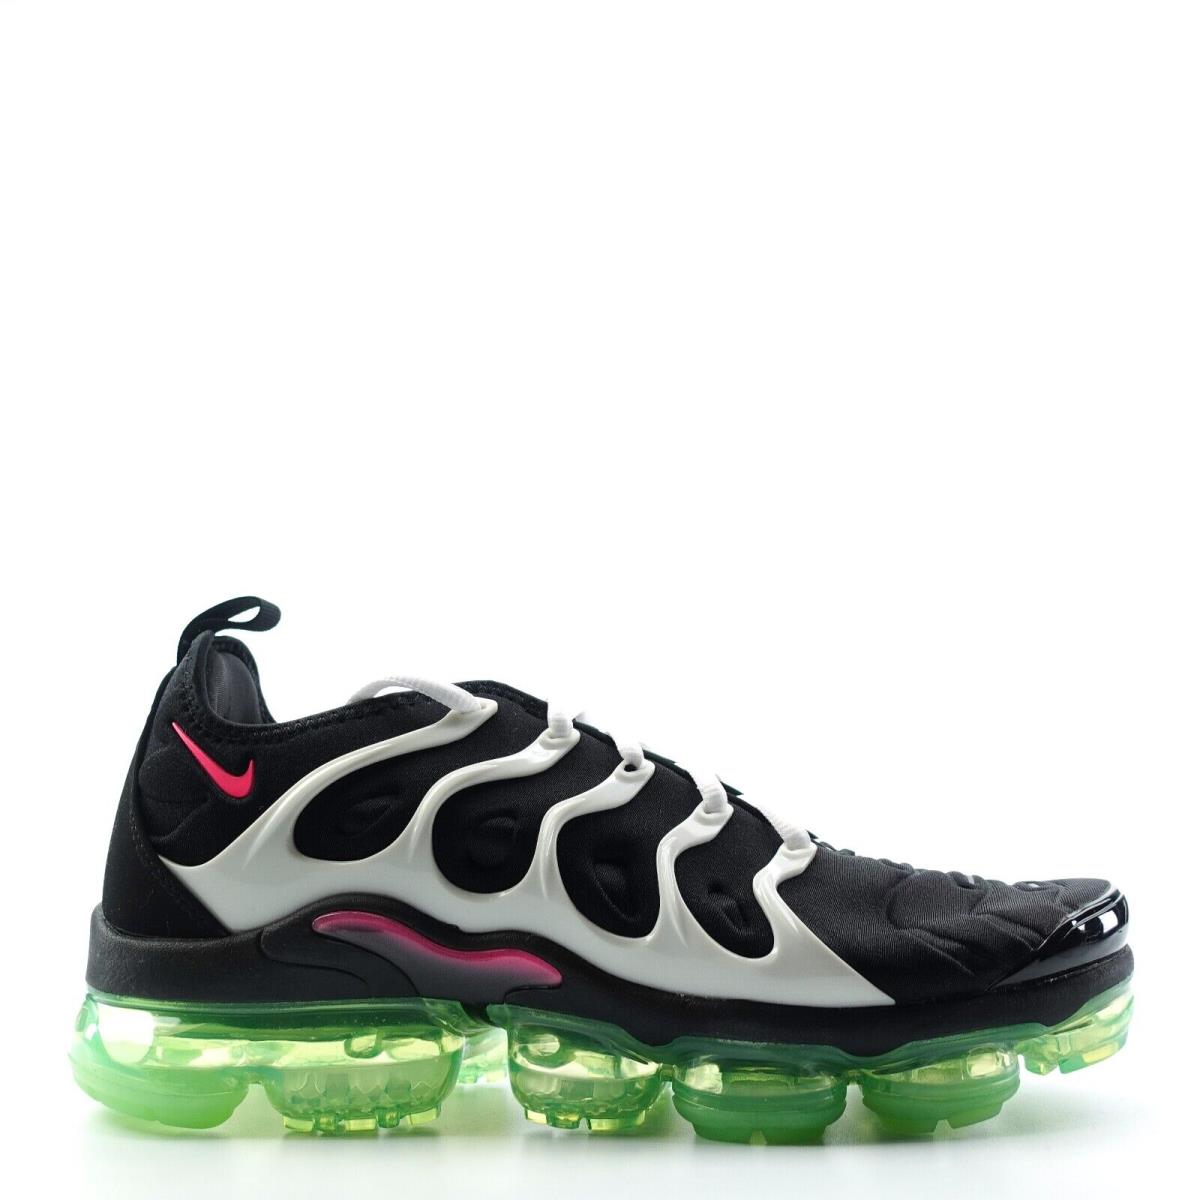 Nike Air Vapormax Plus Black Hyper Pink Shoes DM8121 001 Mens Size 9